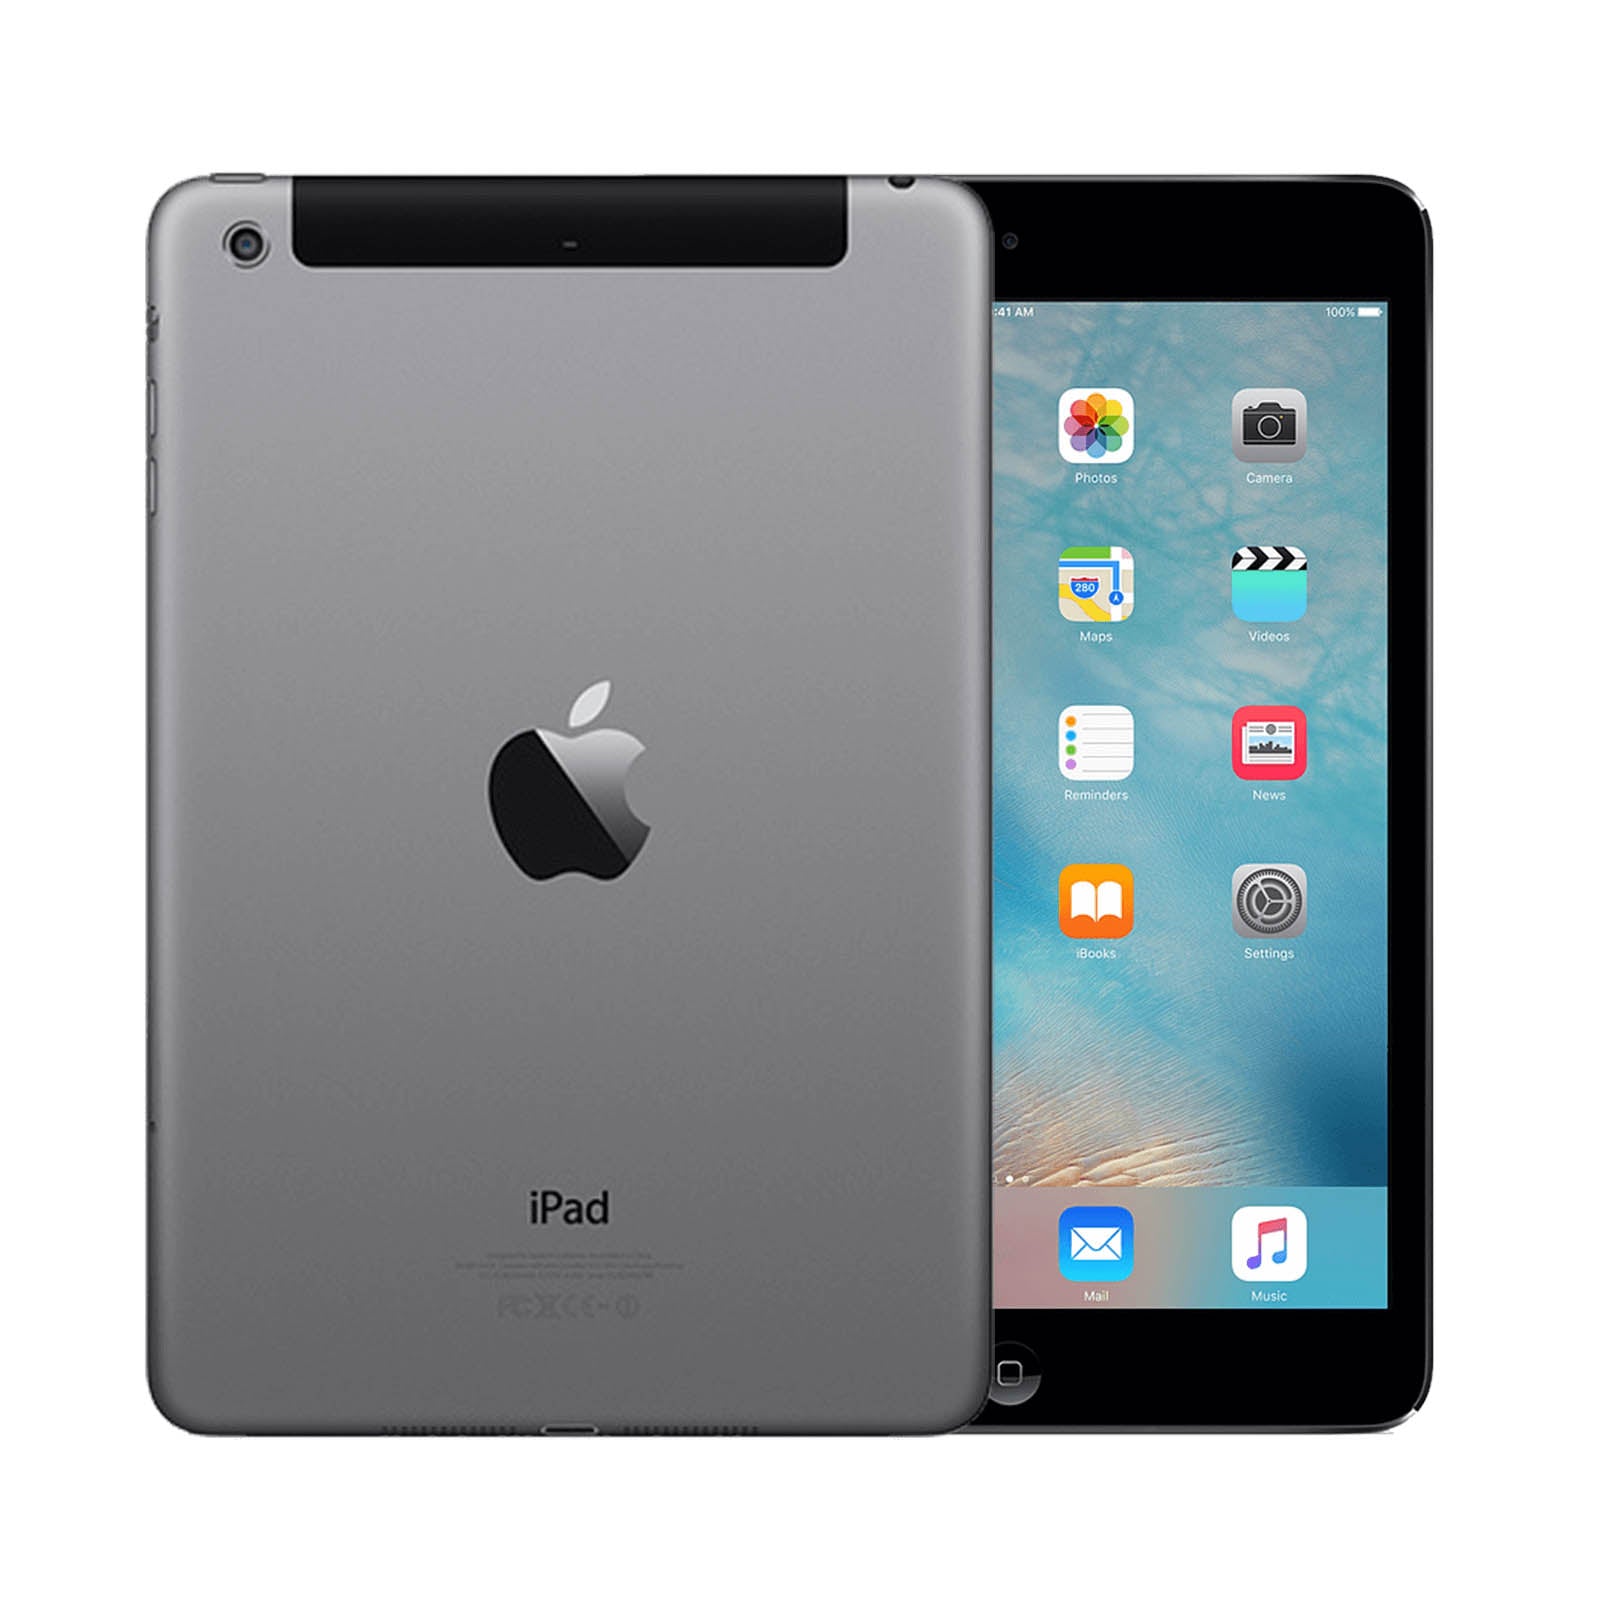 Apple iPad mini 2 128GB Black Good - Unlocked